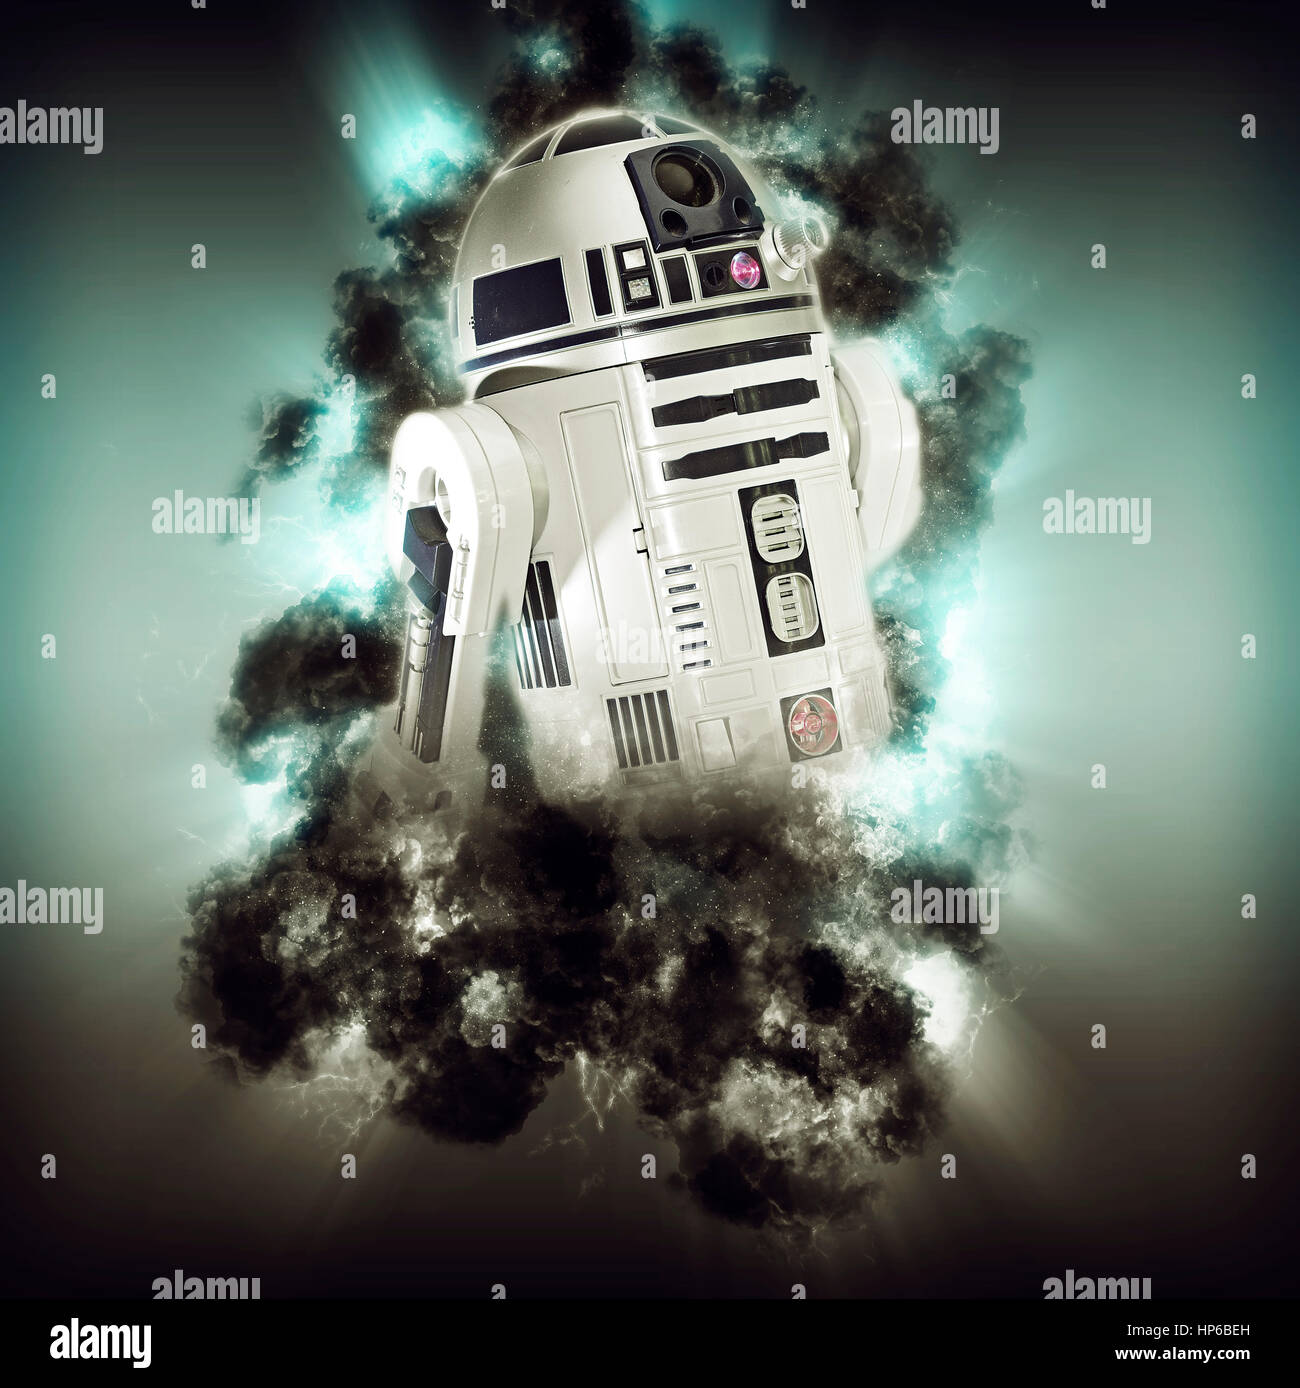 Migliorate digitalmente immagine di Star Wars R2-D2 robot Foto Stock